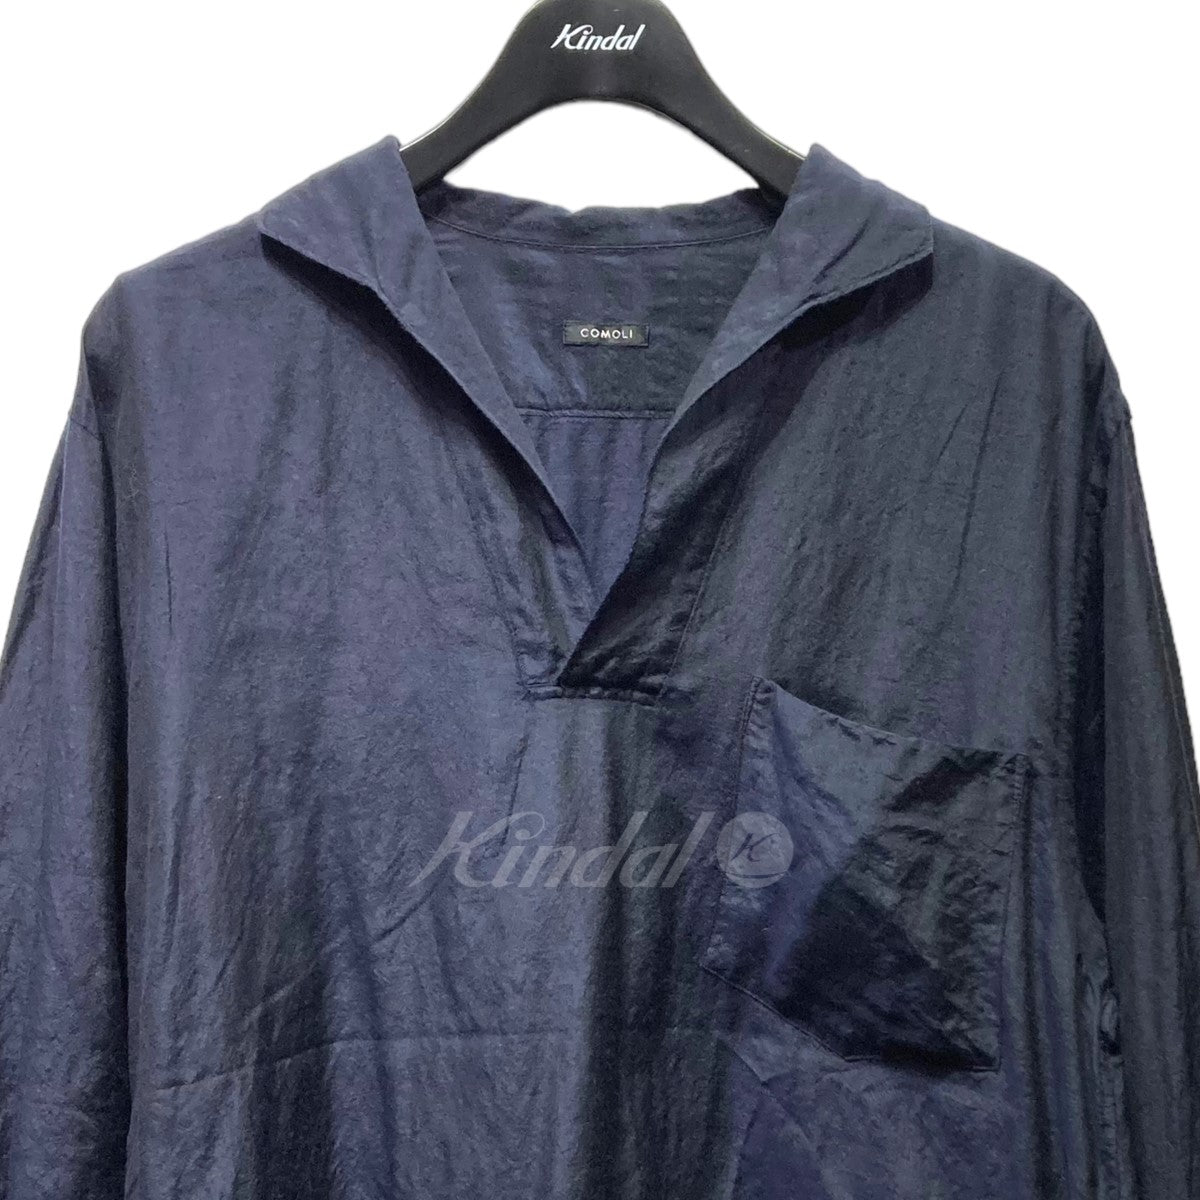 COMOLI(コモリ) 22SS ウールシルクスキッパーシャツ V01-02022【値下げ 